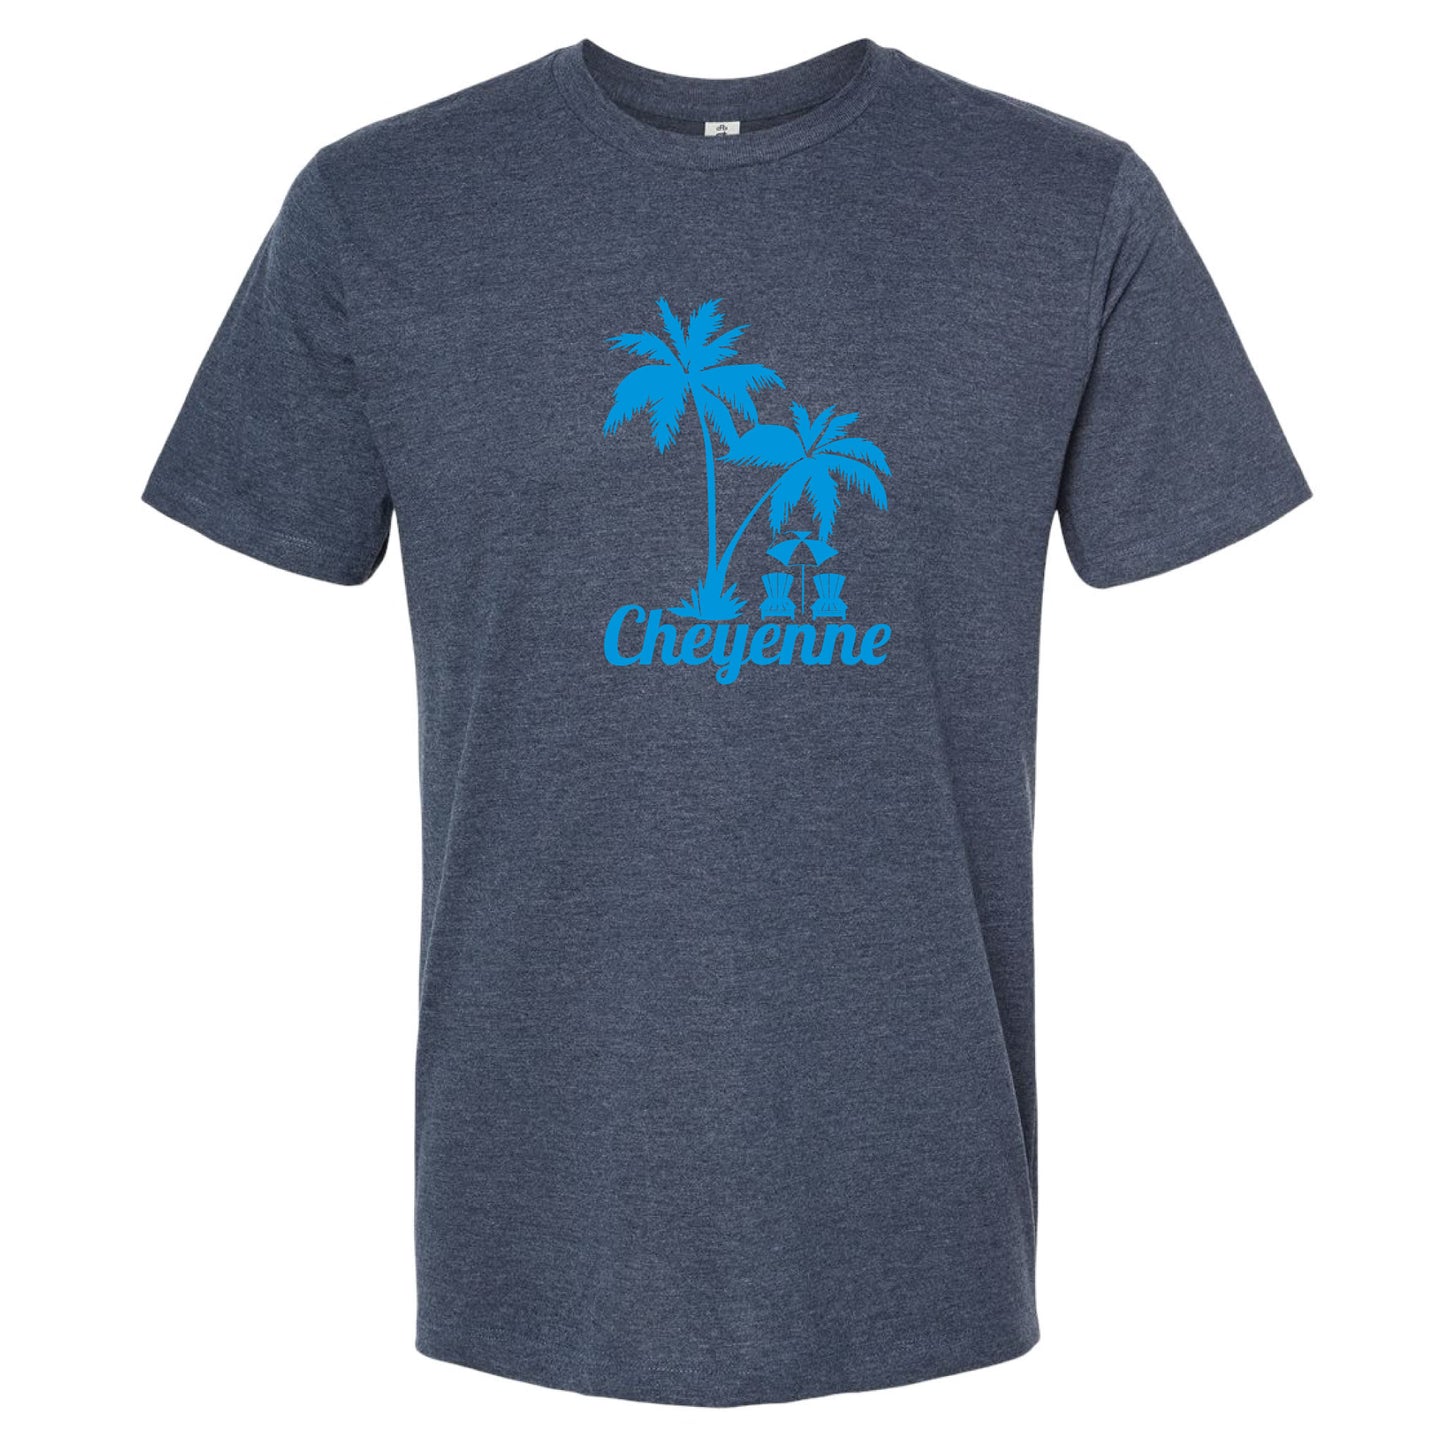 Beaches of Cheyenne T-Shirt